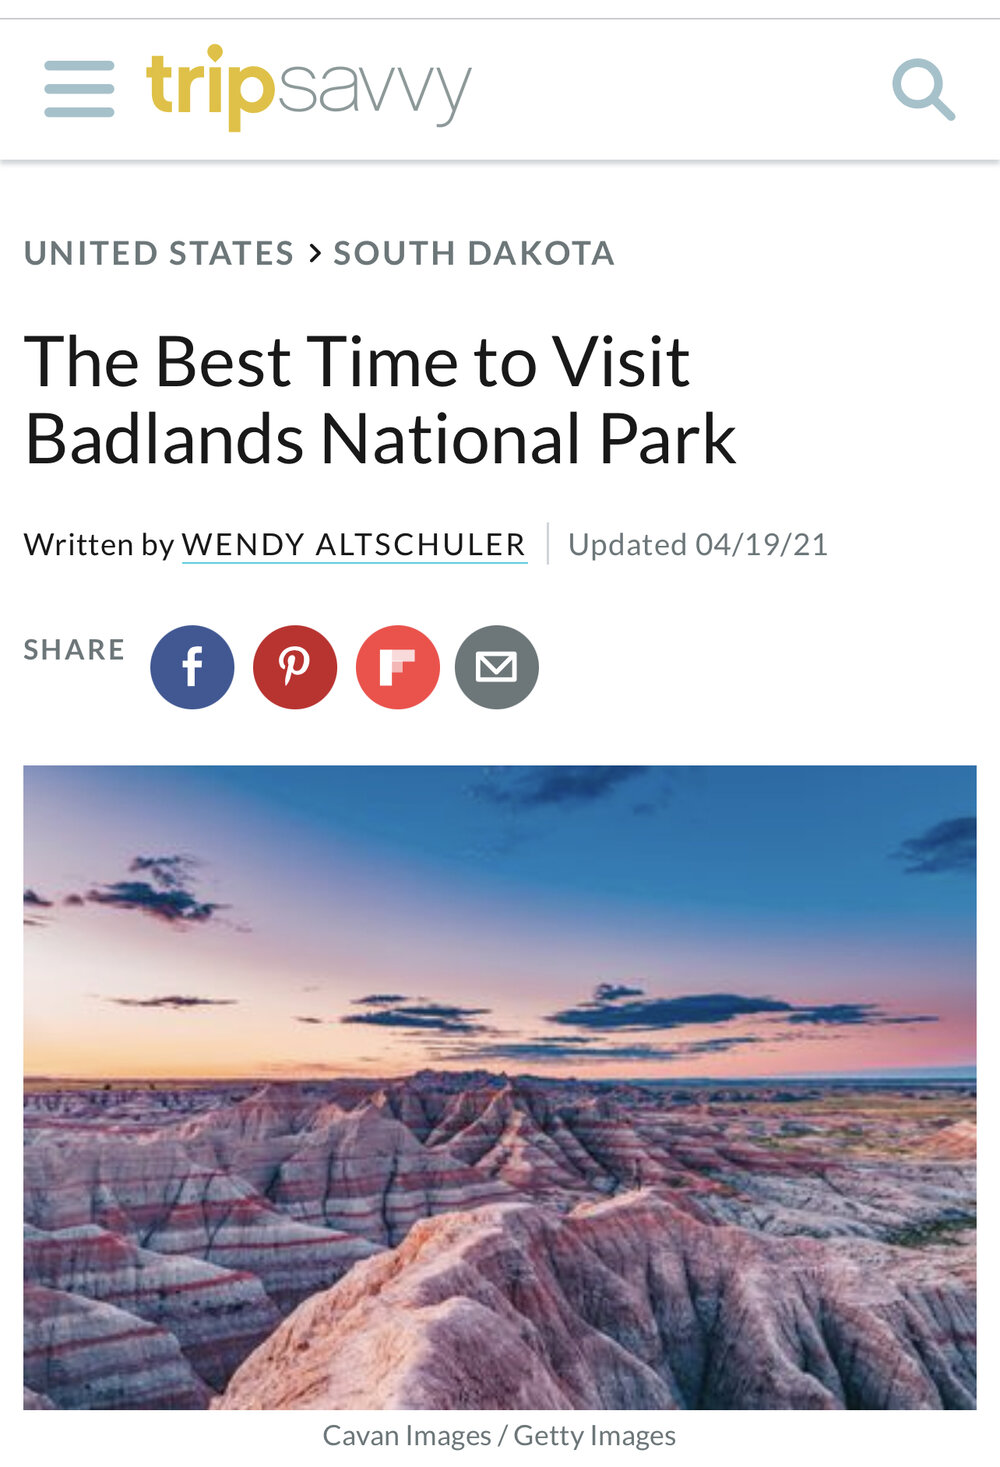 The Best Time to Visit Badlands National Park